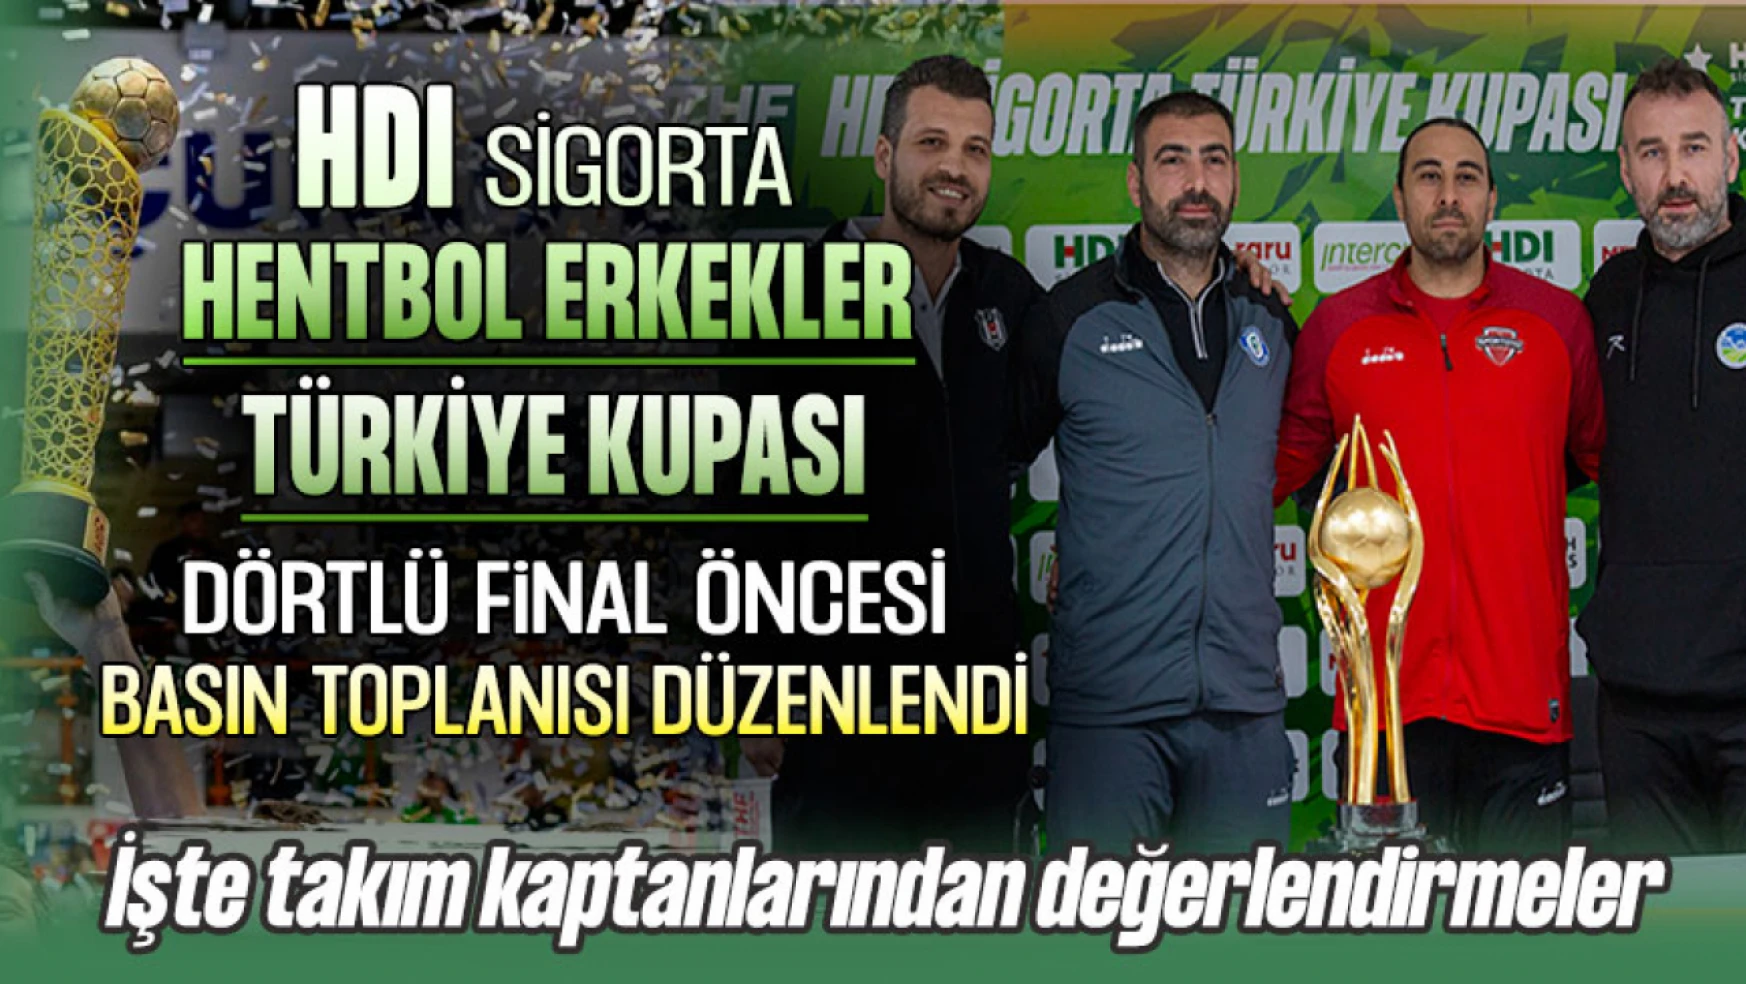 HDI Sigorta Erkekler Türkiye Kupası Dörtlü Final Öncesi Takım Kaptanlarından Değerlendirmeler